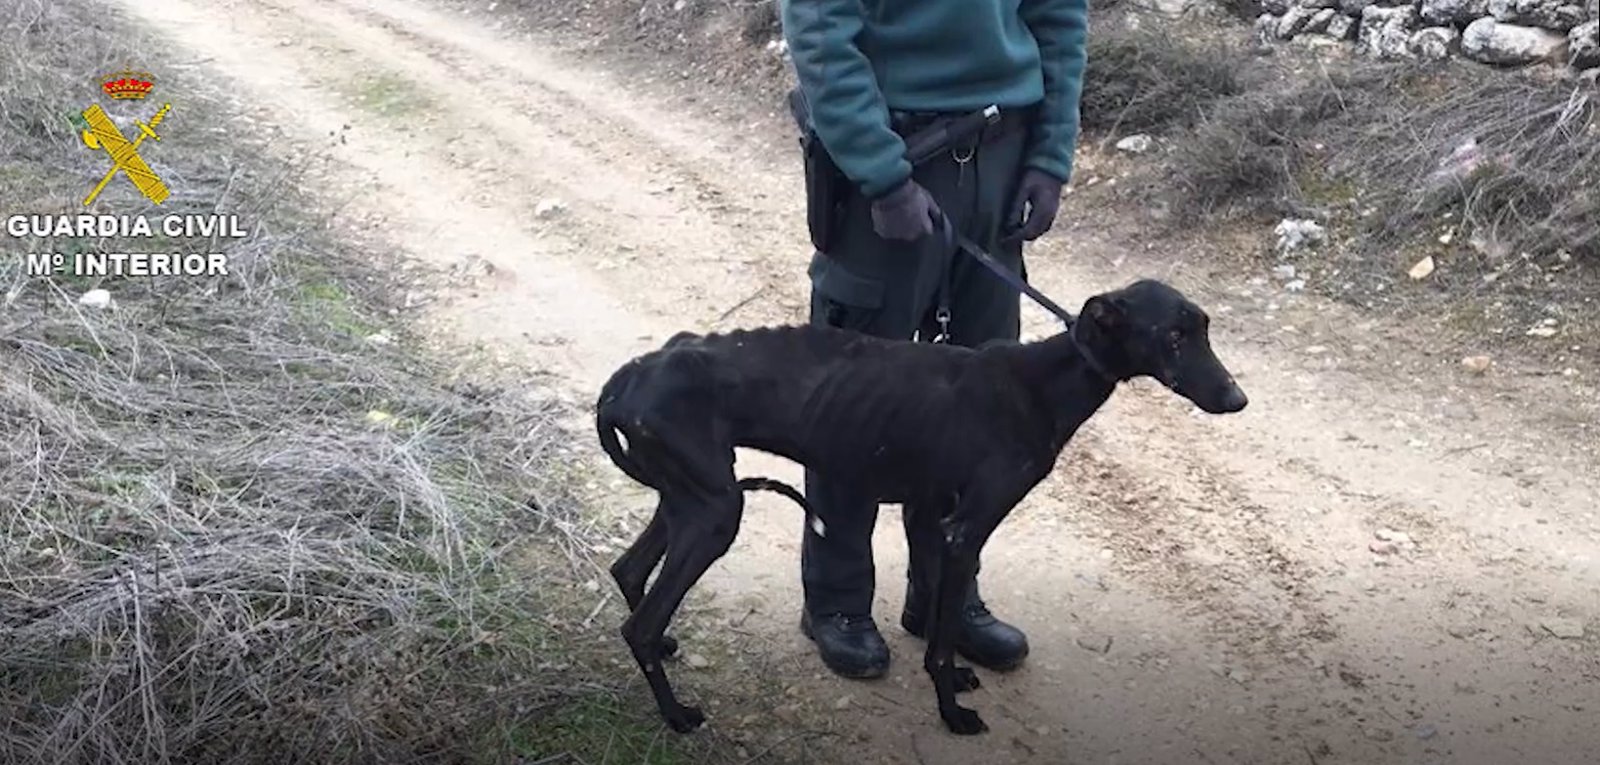 Intervenidos cinco perros que se encontraban en pésimas condiciones en una finca de Campo Real